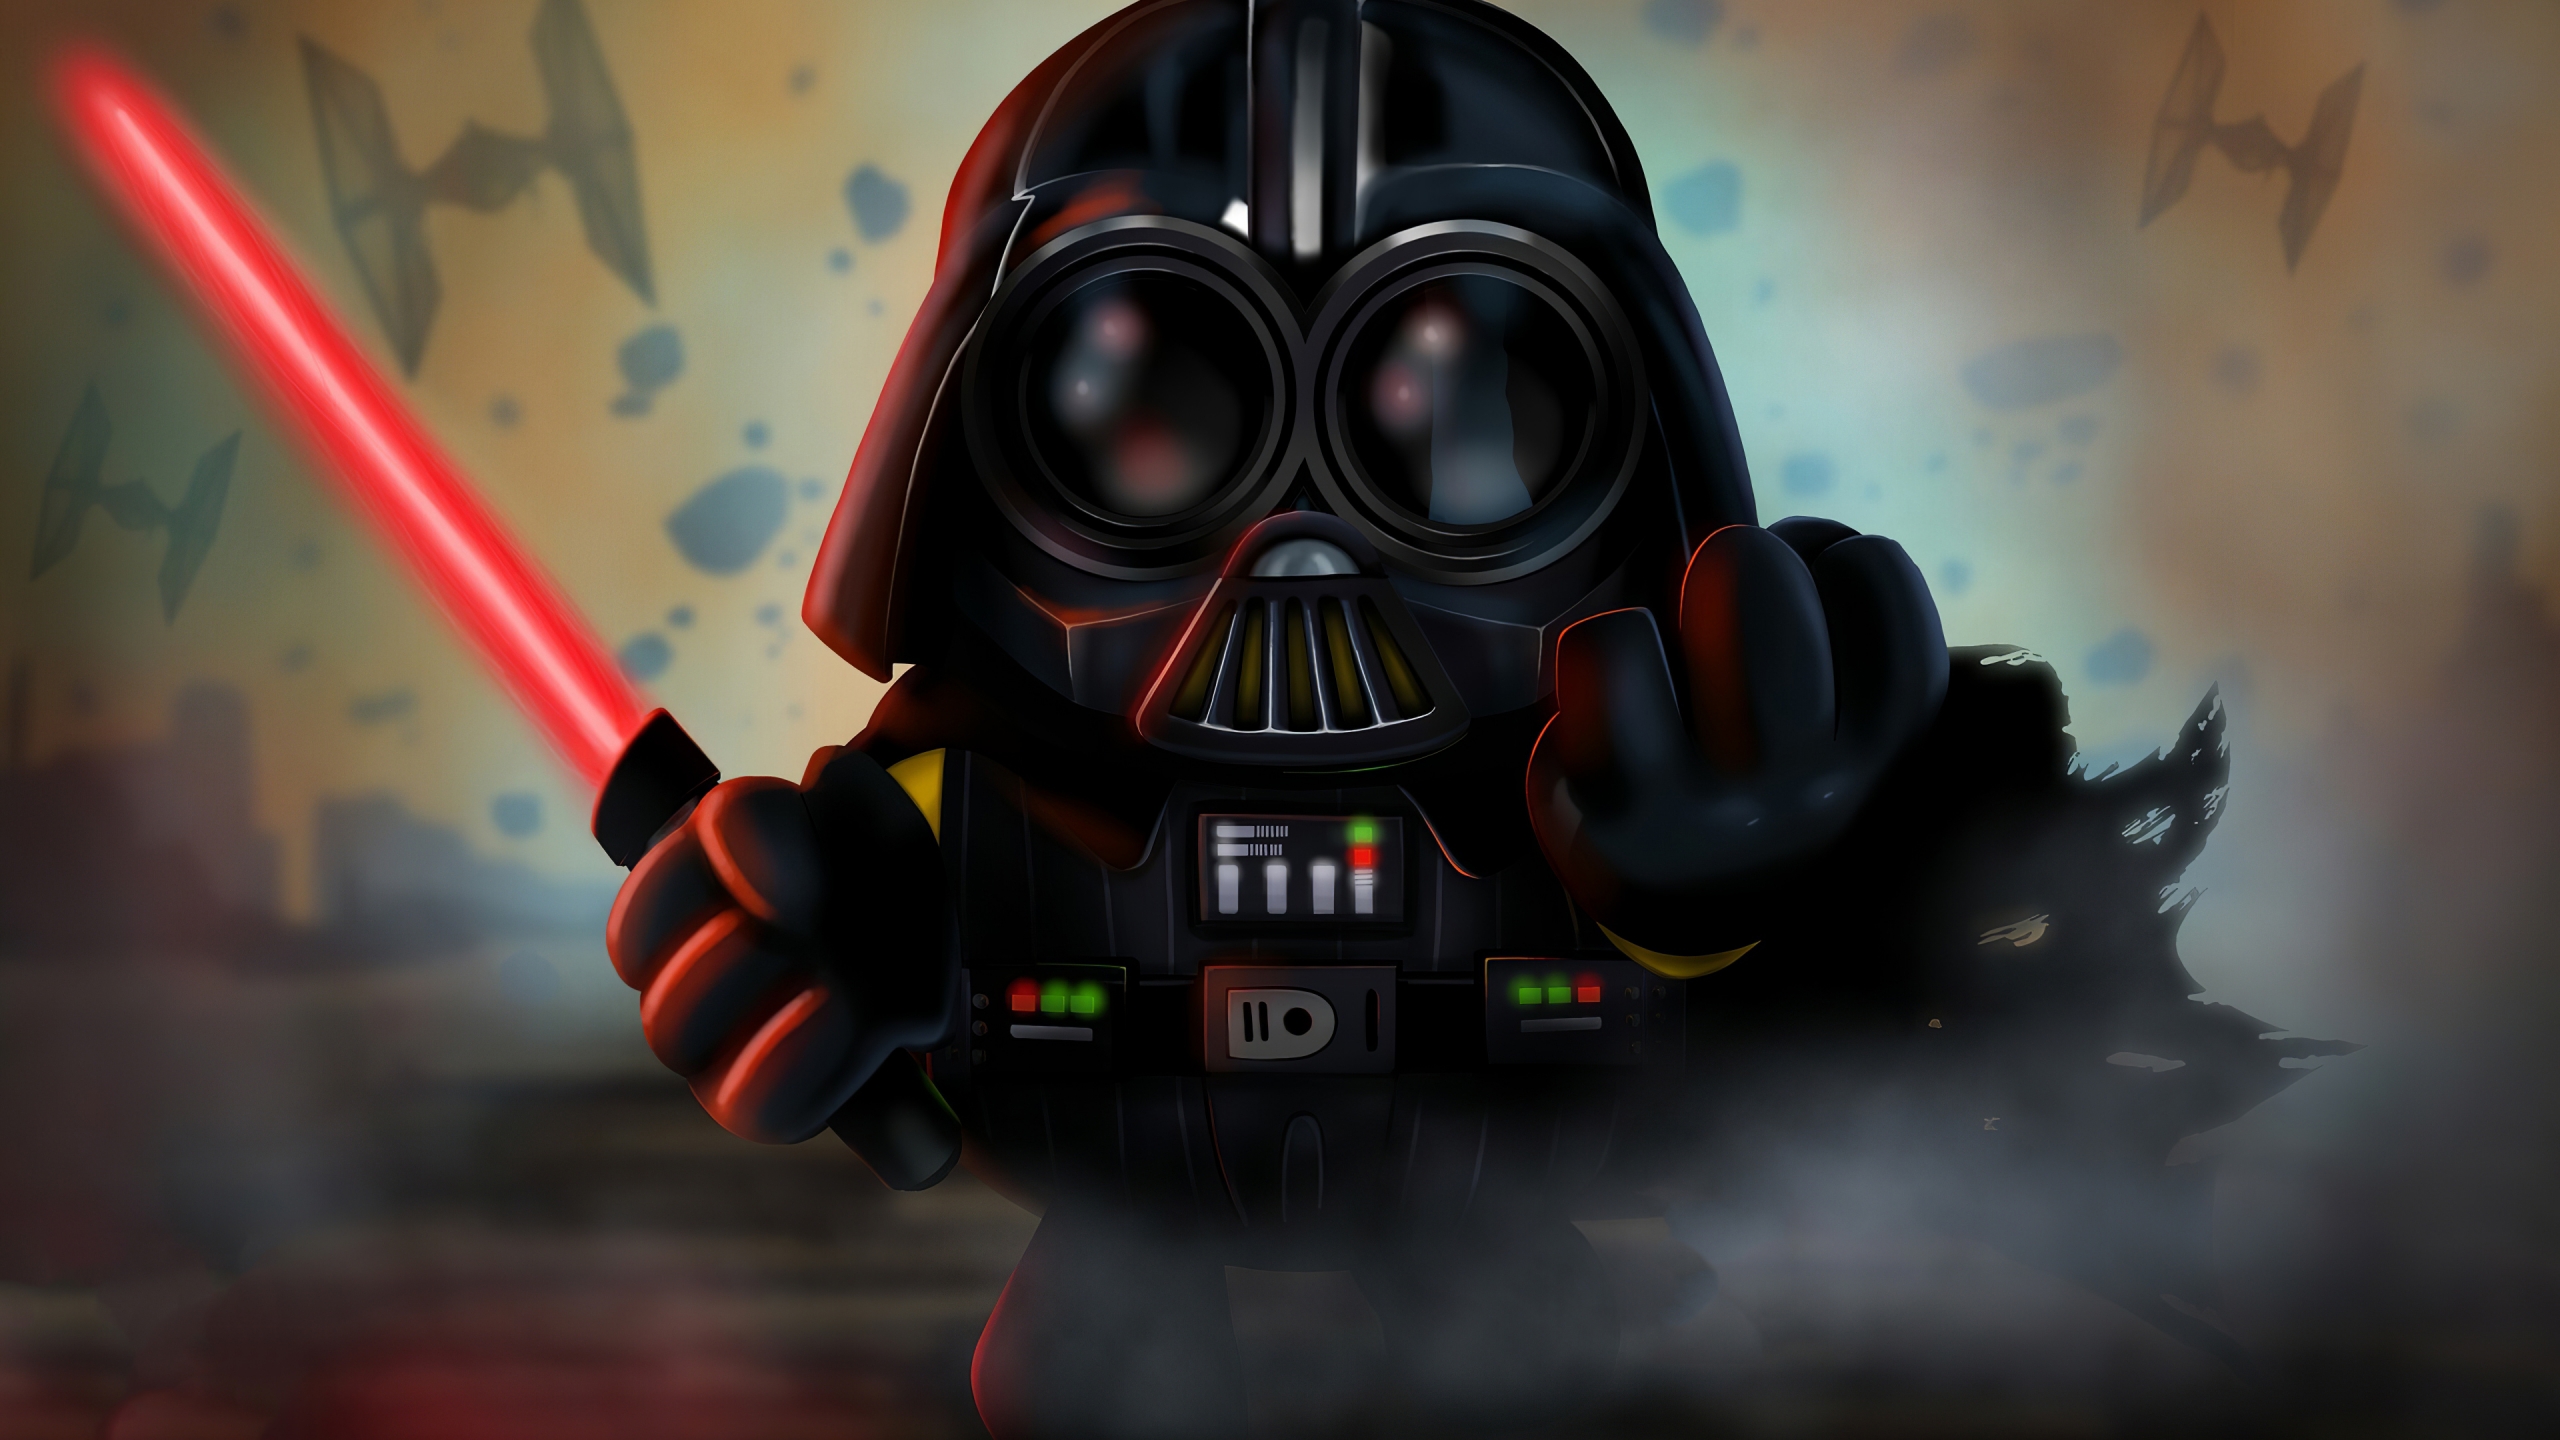 Minion as Darth Vader Wallpaper 4k Ultra HD ID:5463